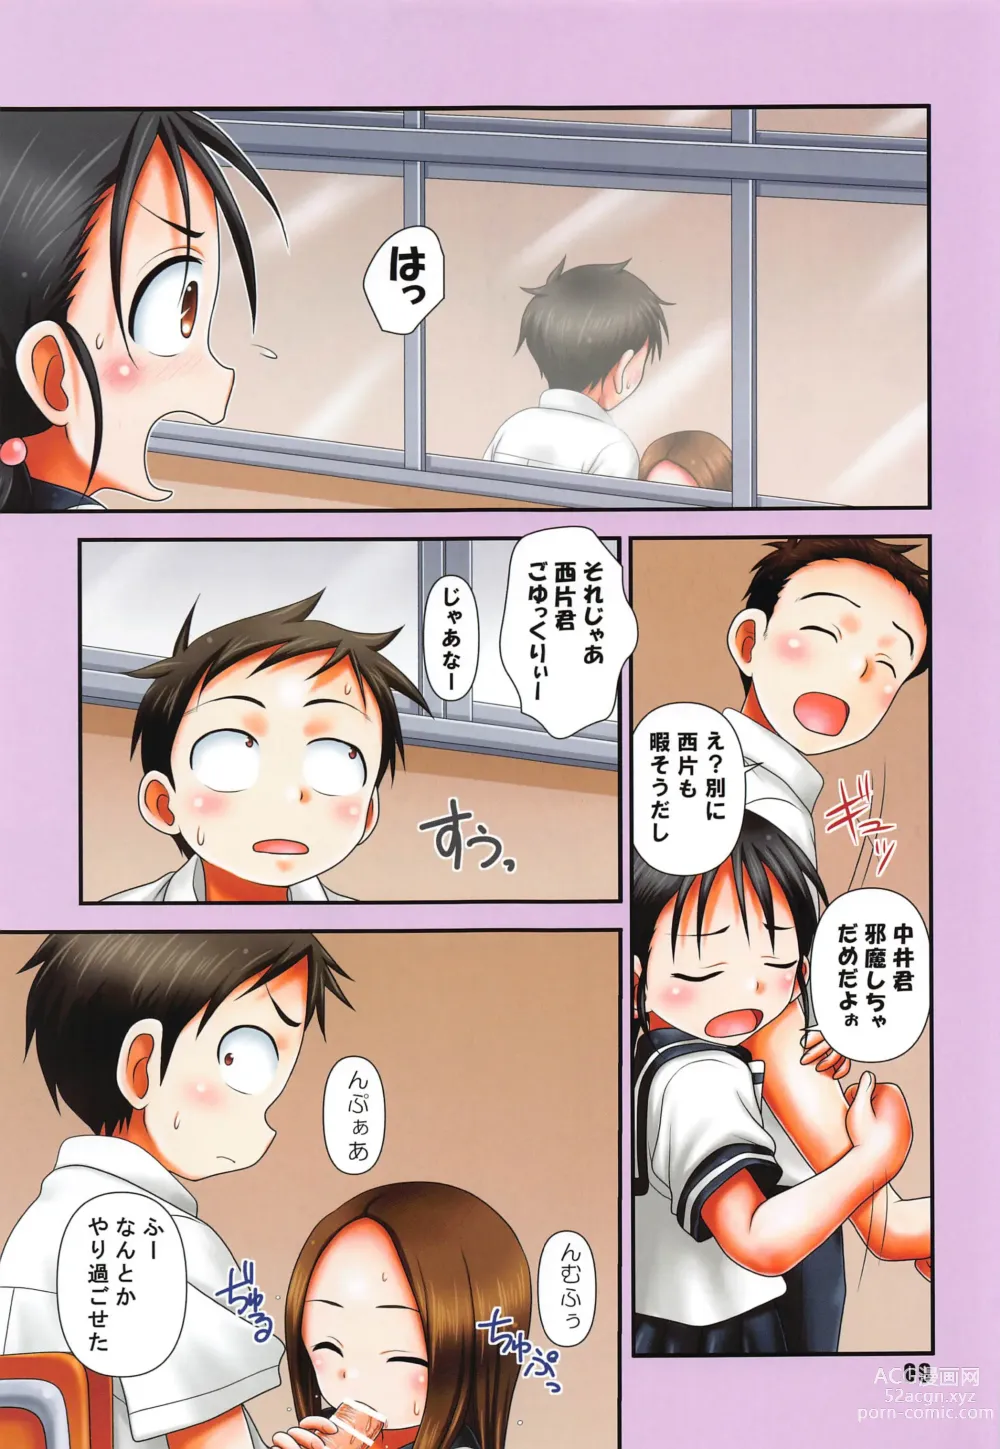 Page 8 of doujinshi GARNET color edition